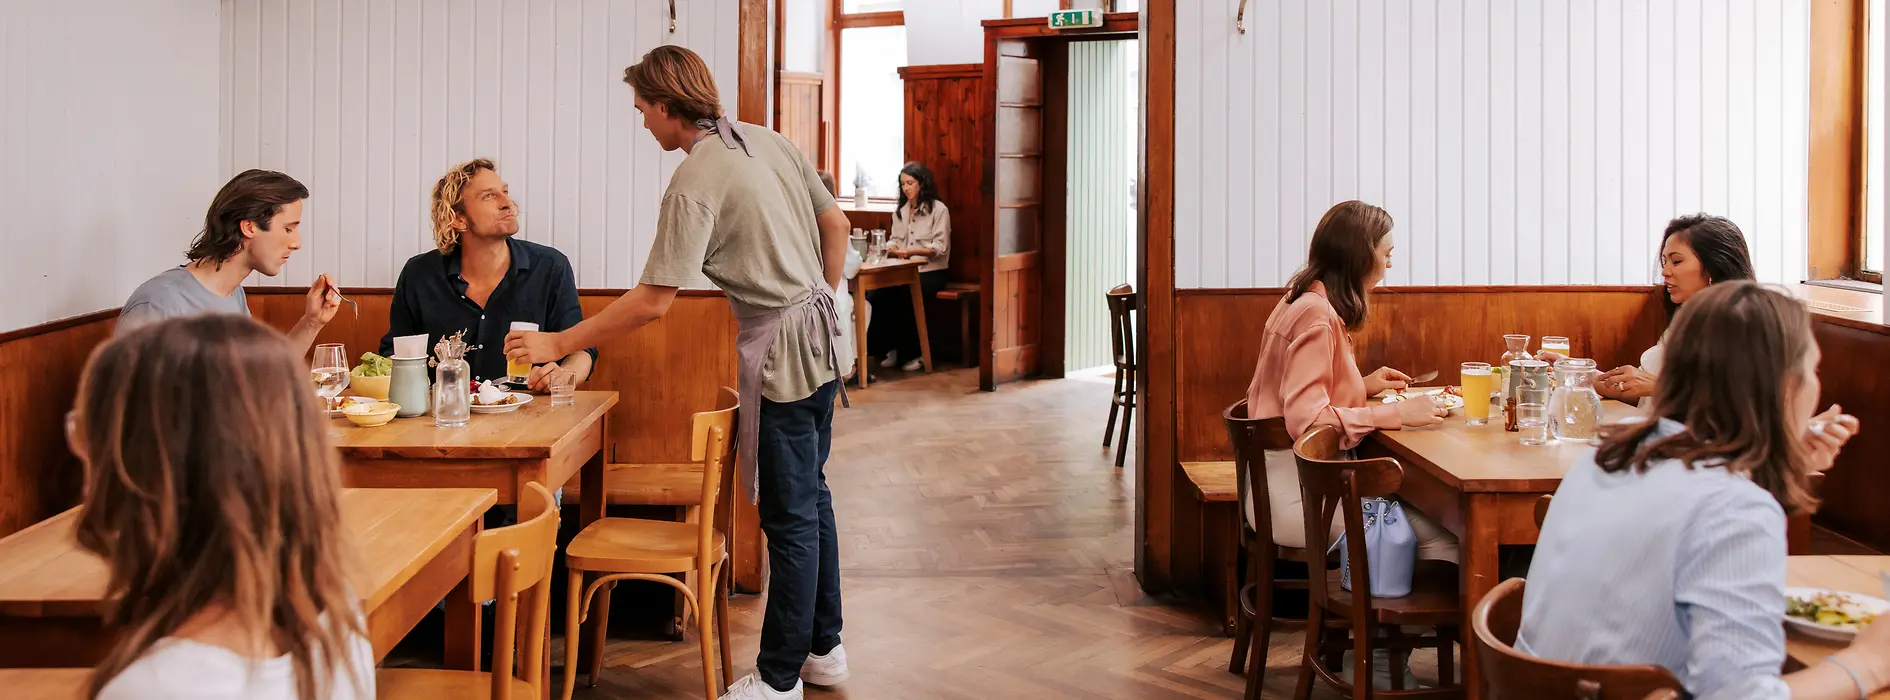 Stuwerviertel, Brösl restaurant, interior view, guests